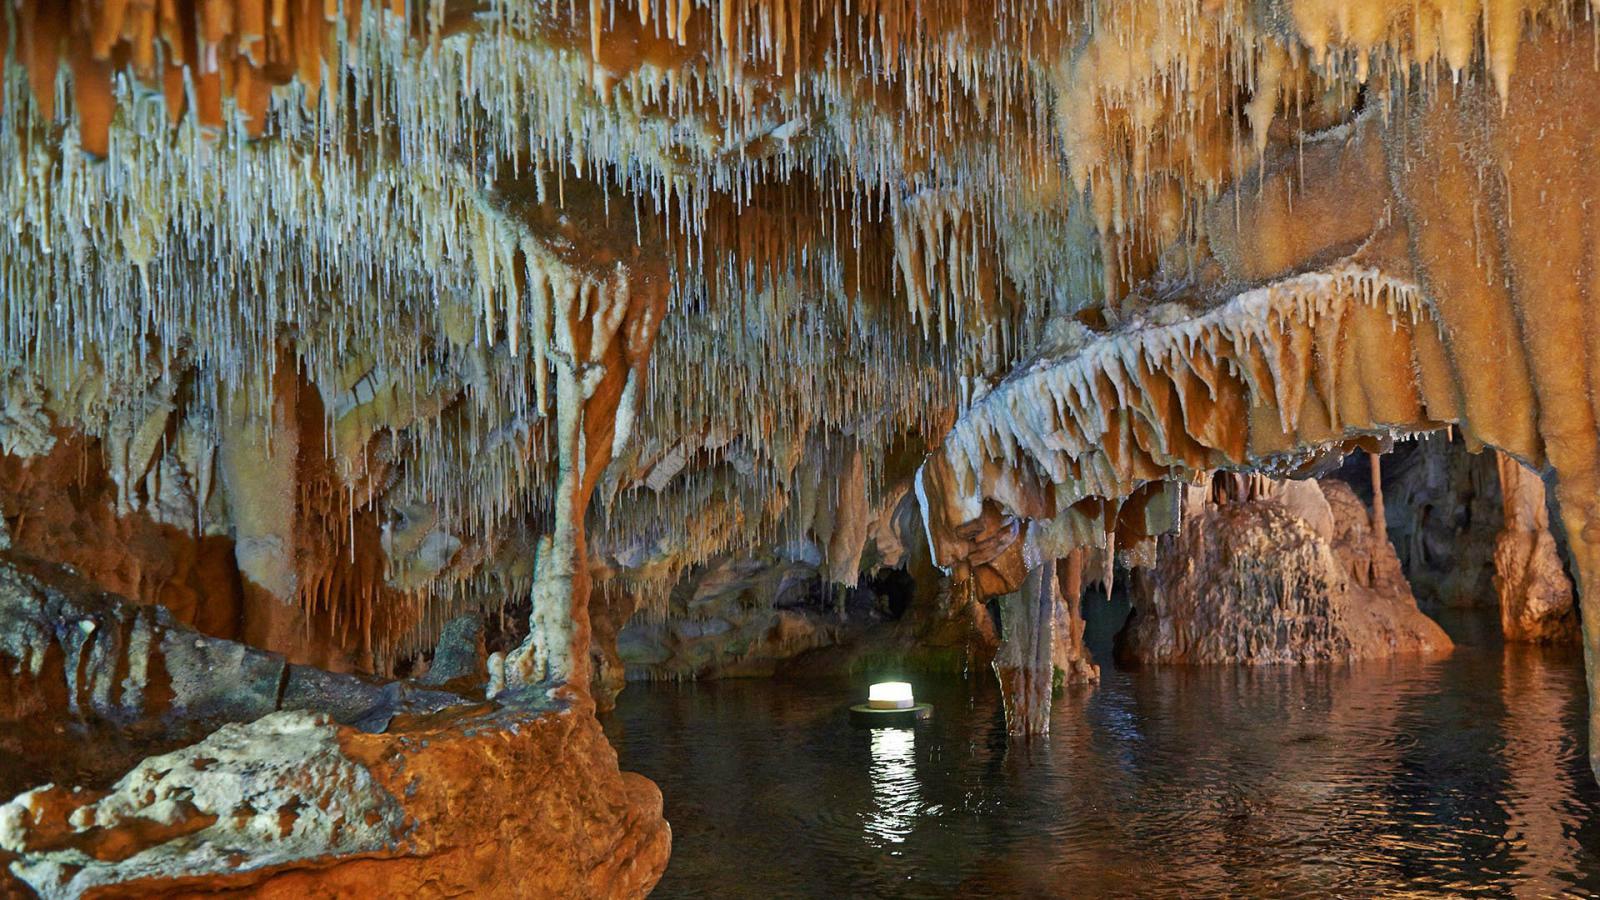 Ίσως το ομορφότερο σπήλαιο της Ελλάδας